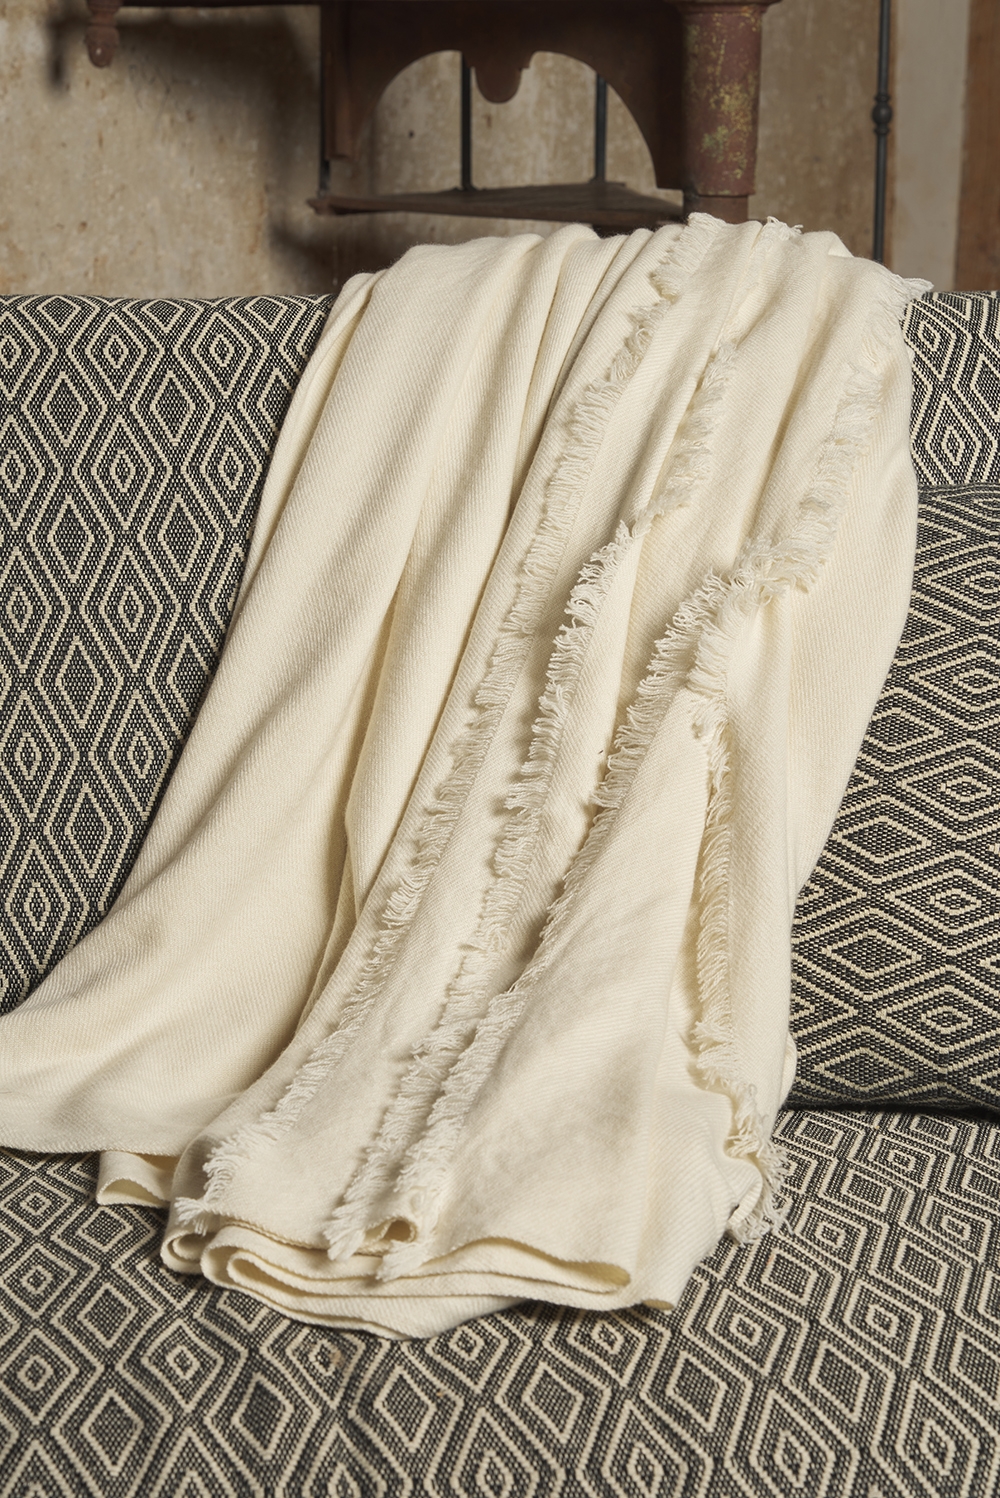 Cashmere accessories blanket toodoo natural 220 x 220 natural ecru 220 x 220 cm